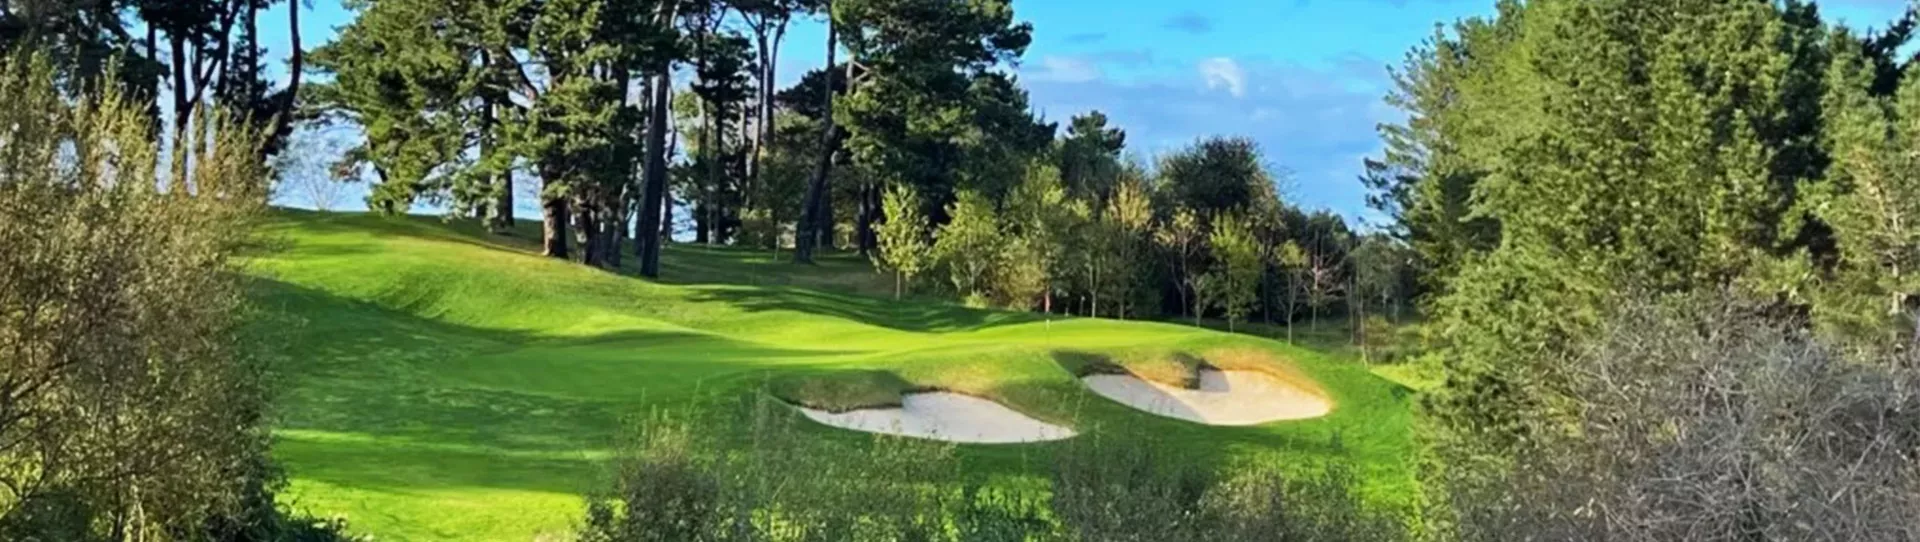 Spain golf courses - Real Golf de Pedreña - Photo 1